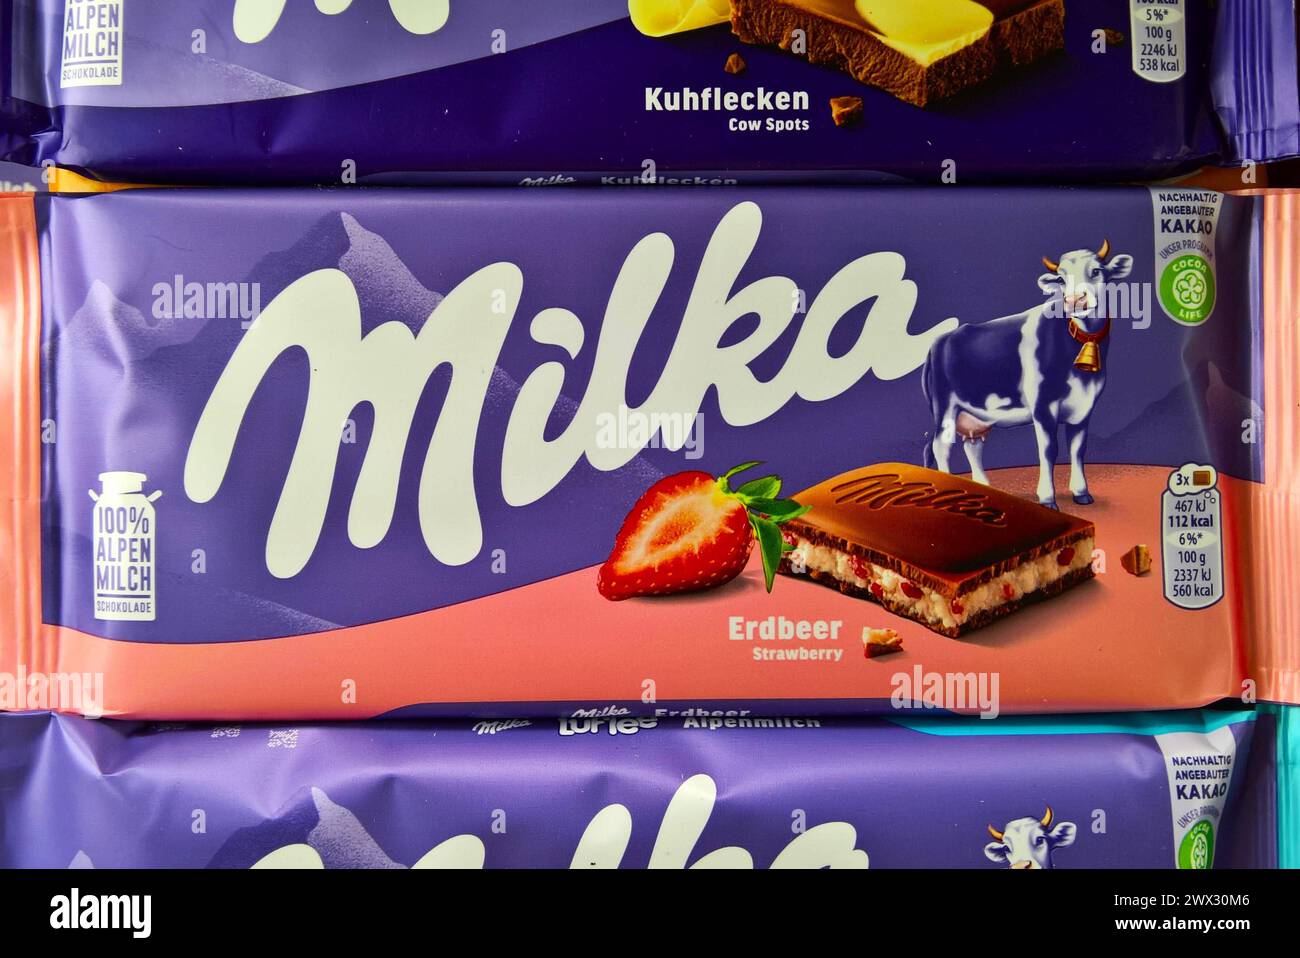 Milka Erdbeer Schokolade vom US-amerikanischen Nahrungsmittelkonzerns Mondelez International *** Milka strawberry chocolate from the US food company Mondelez International Stock Photo